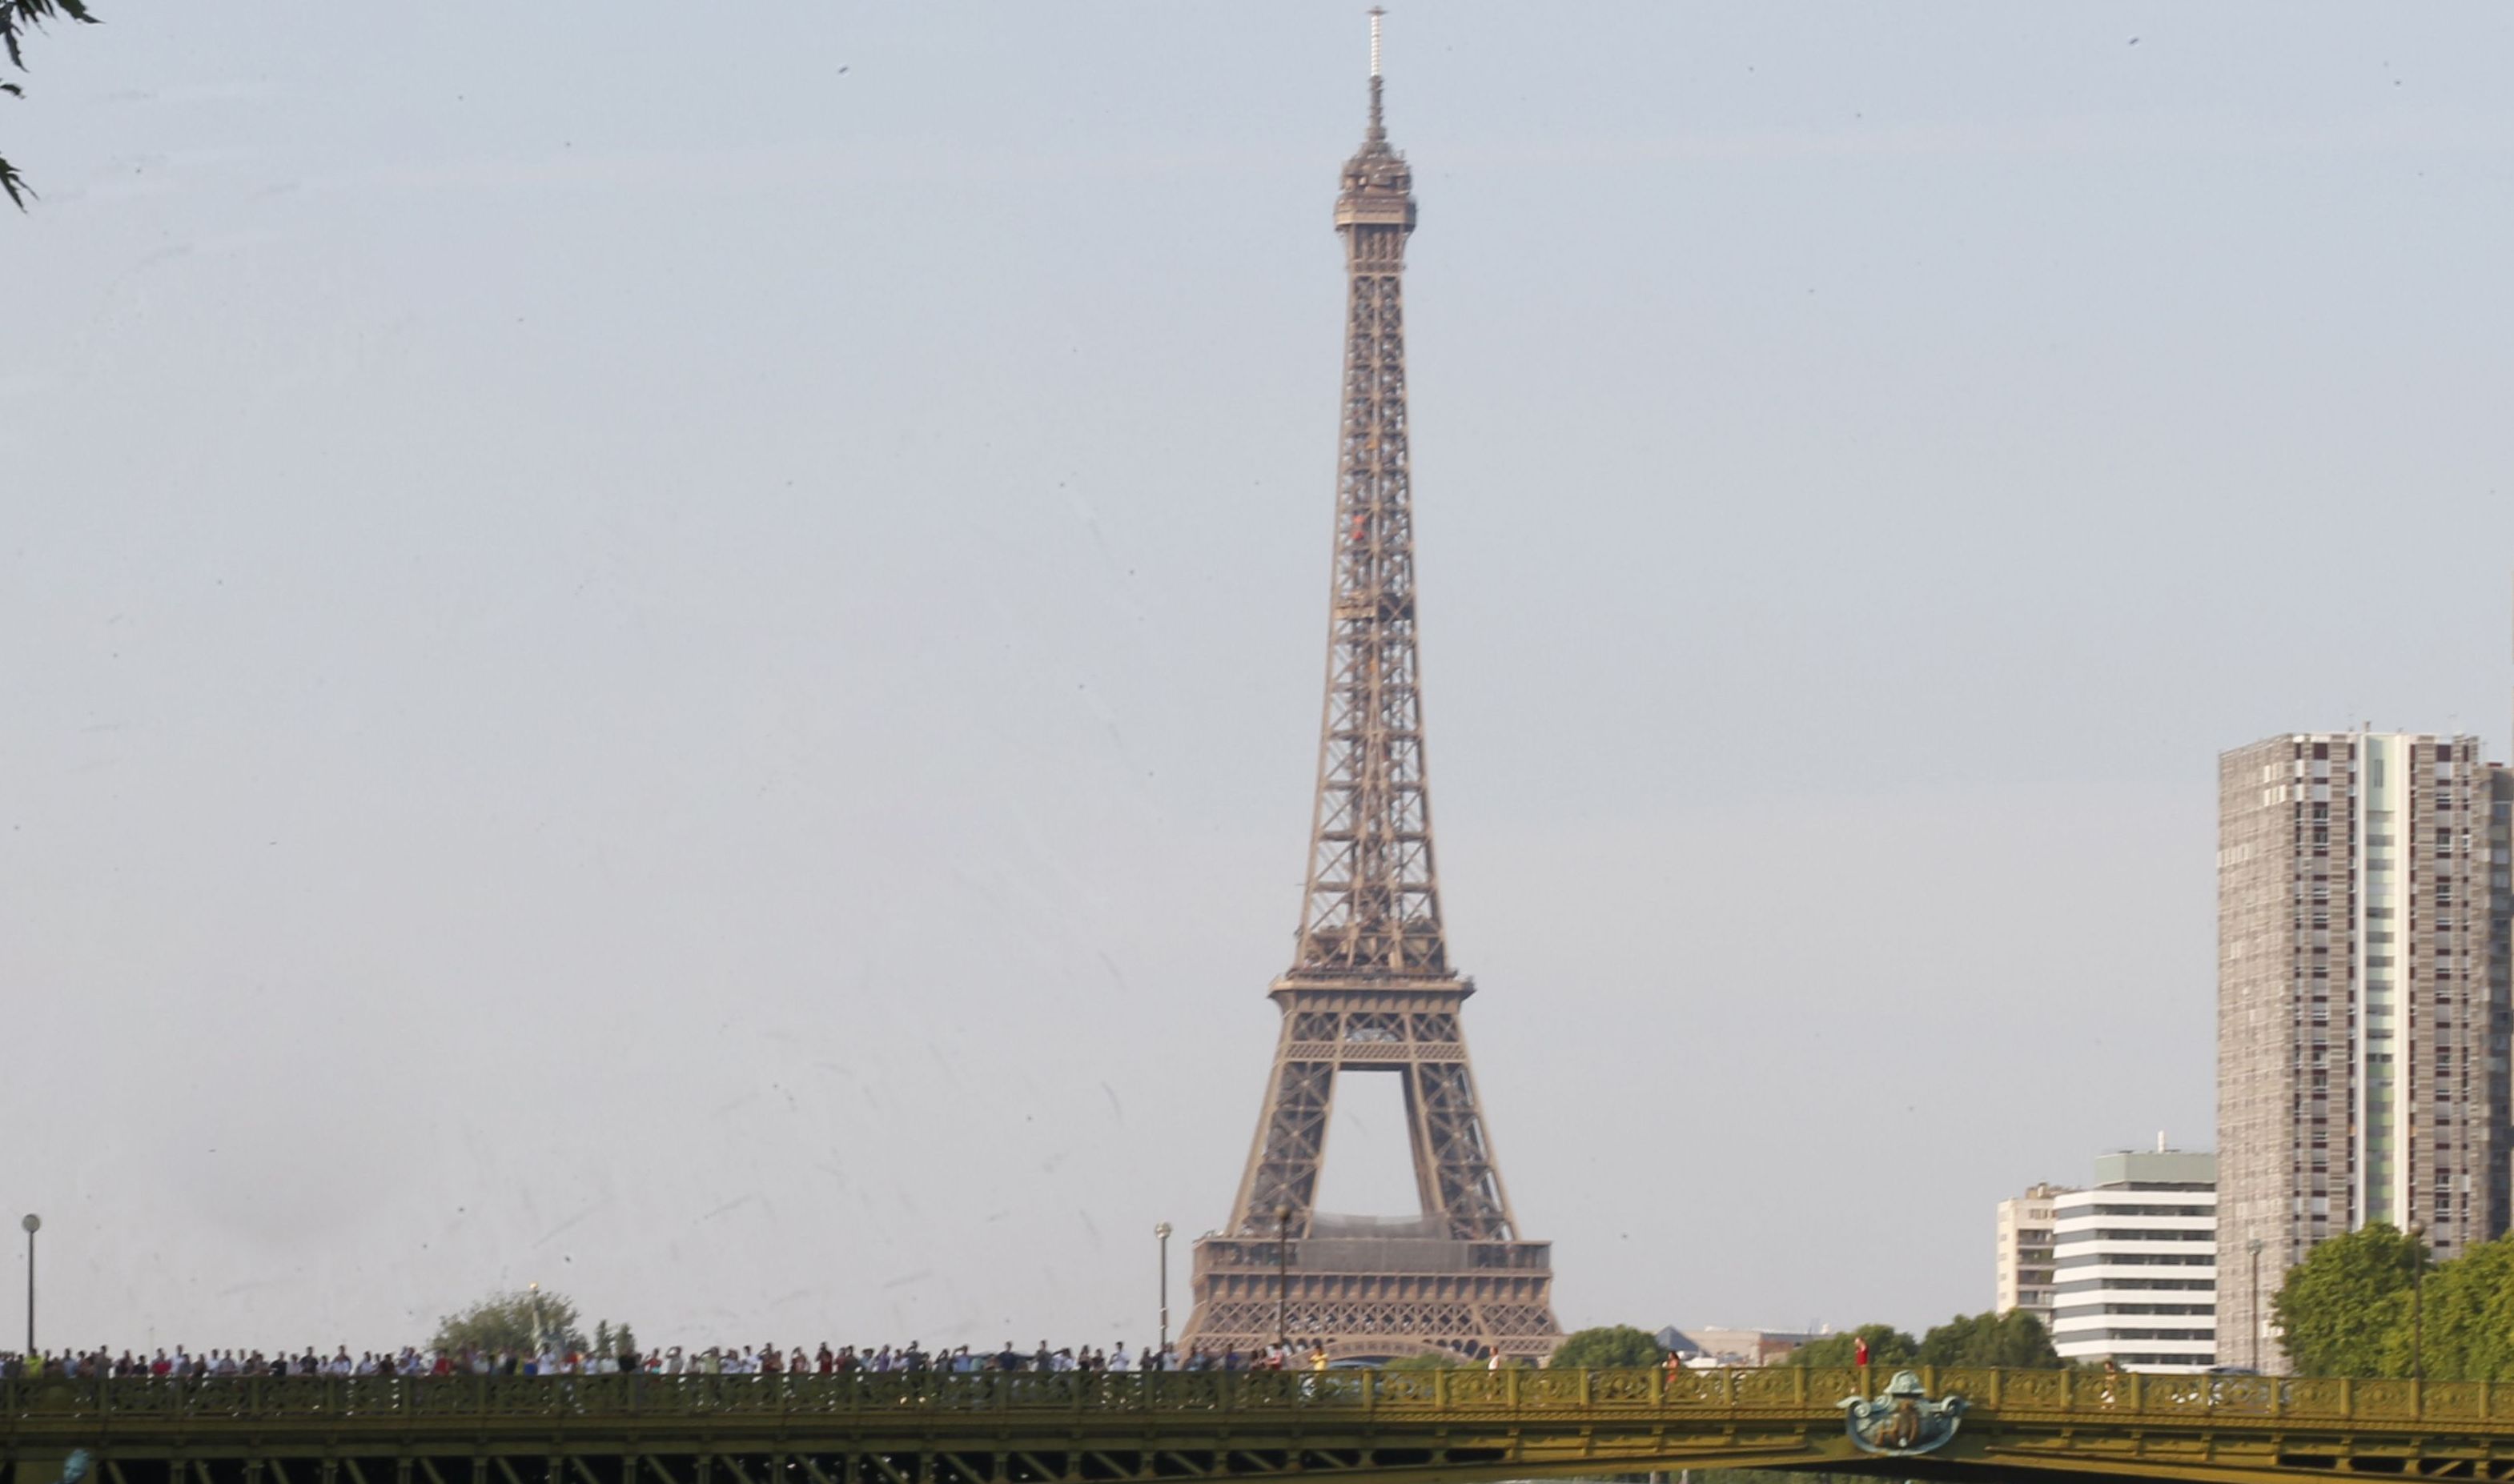 Fenomen rar in timpul unei furtuni in Paris. Turnul Eiffel, lovit de 3 fulgere in cateva secunde